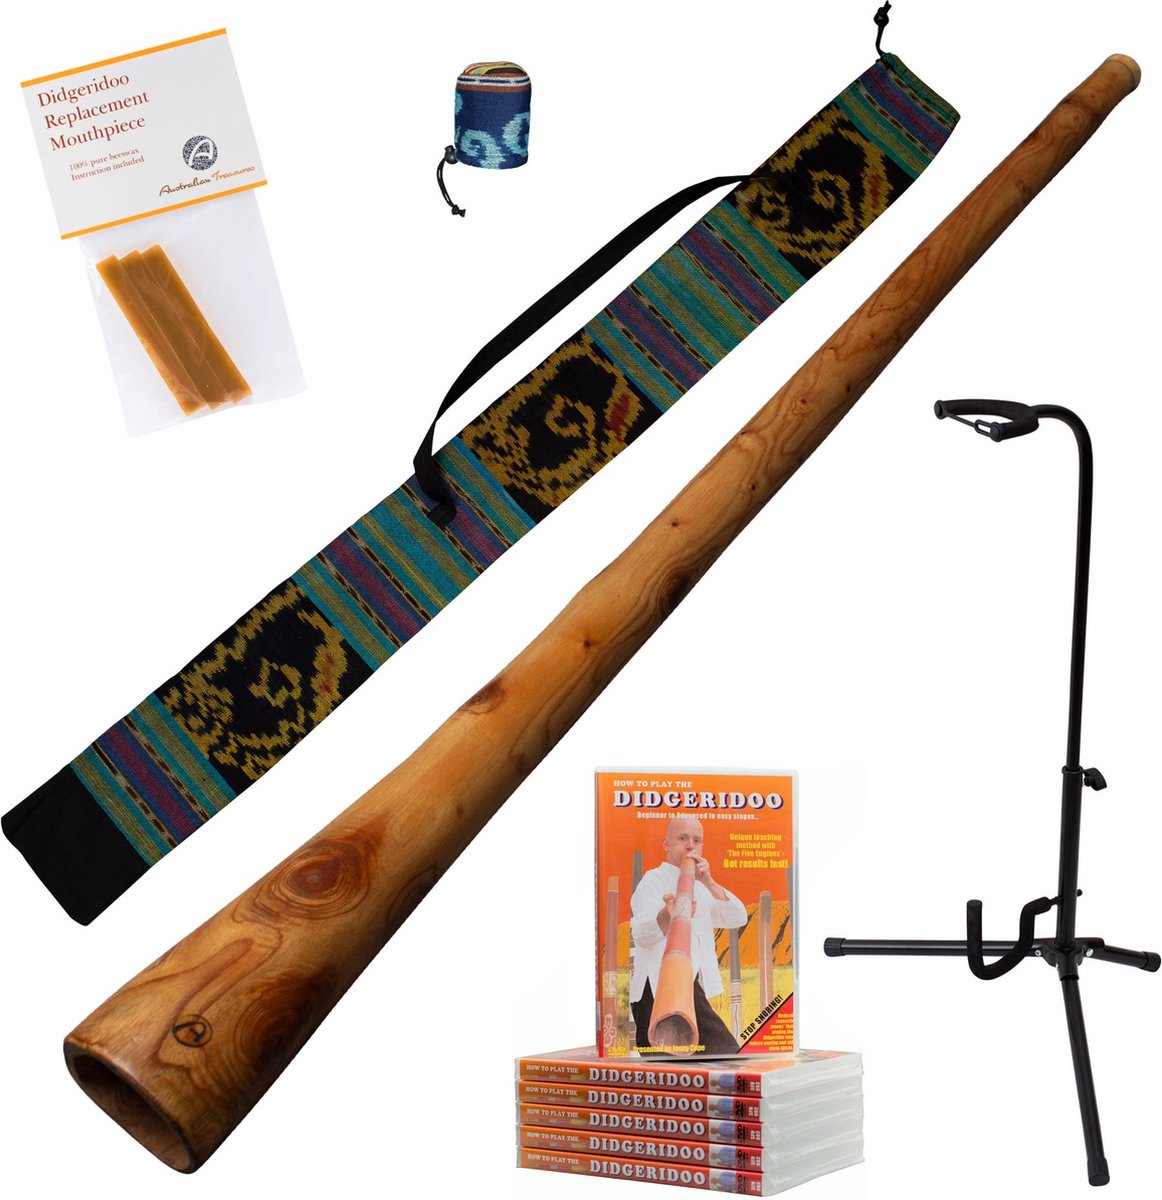 Didgeridoo Mahonie PRO-series 147cm inclusief ikat bag, DVD, bijenwas, beschermcover mondstuk, didgeridoostandaard